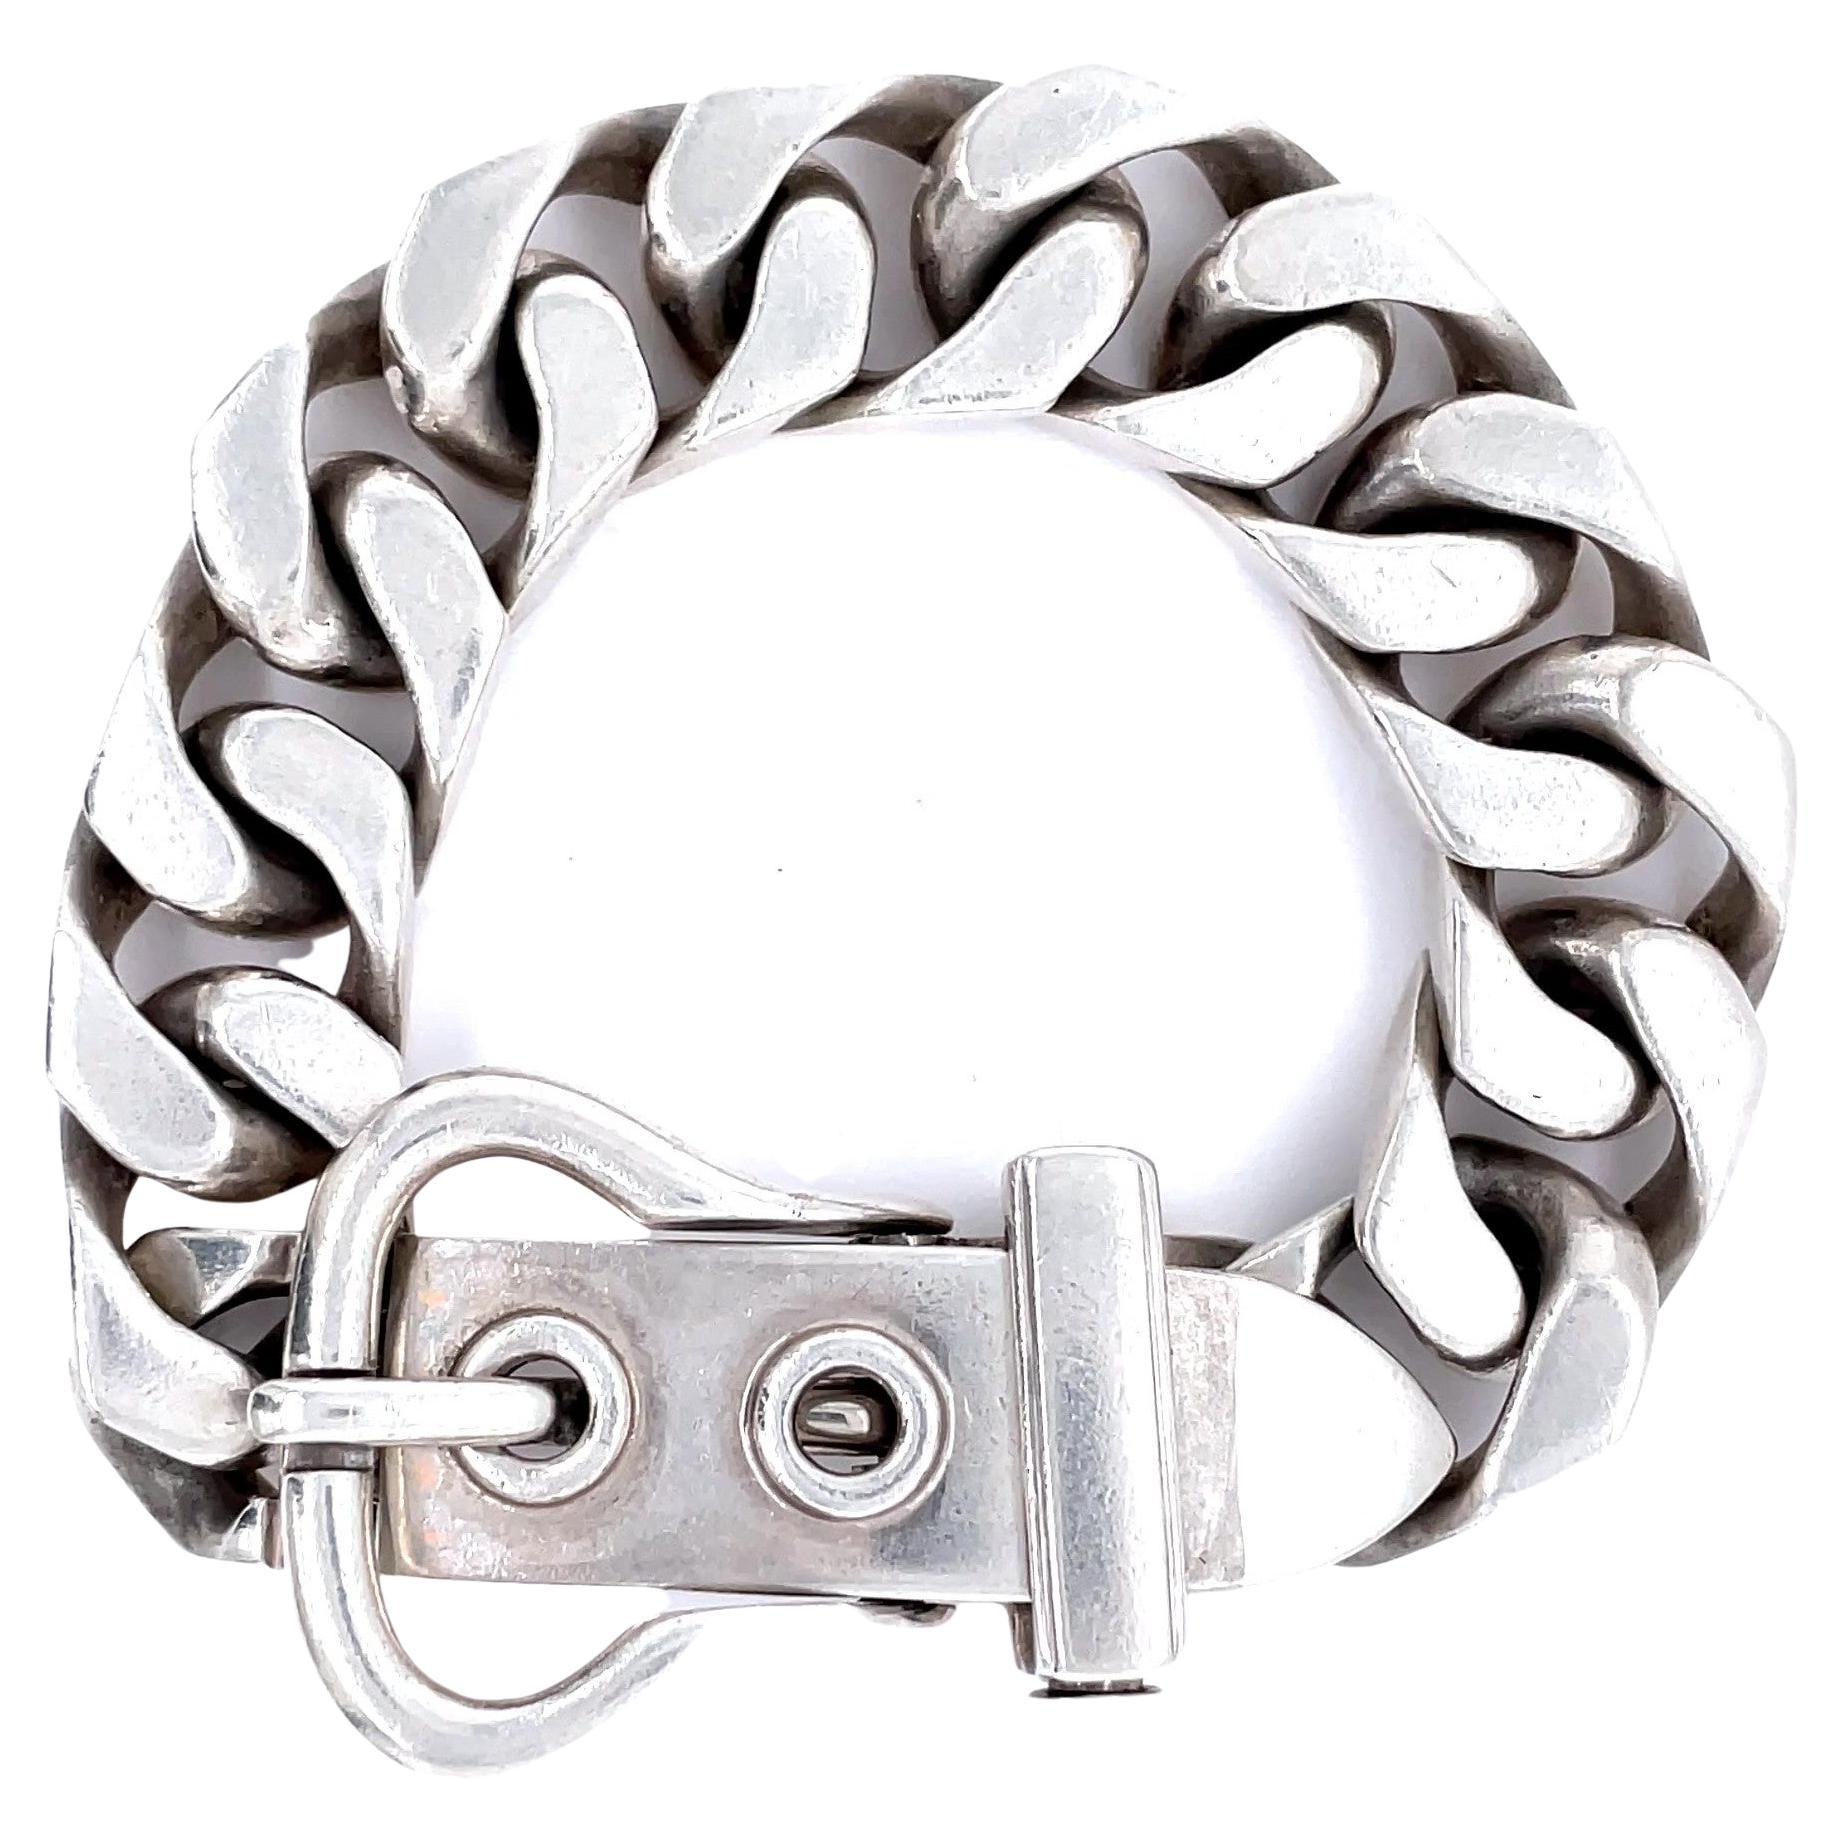 Silver Belt Bracelet - 2 For Sale on 1stDibs